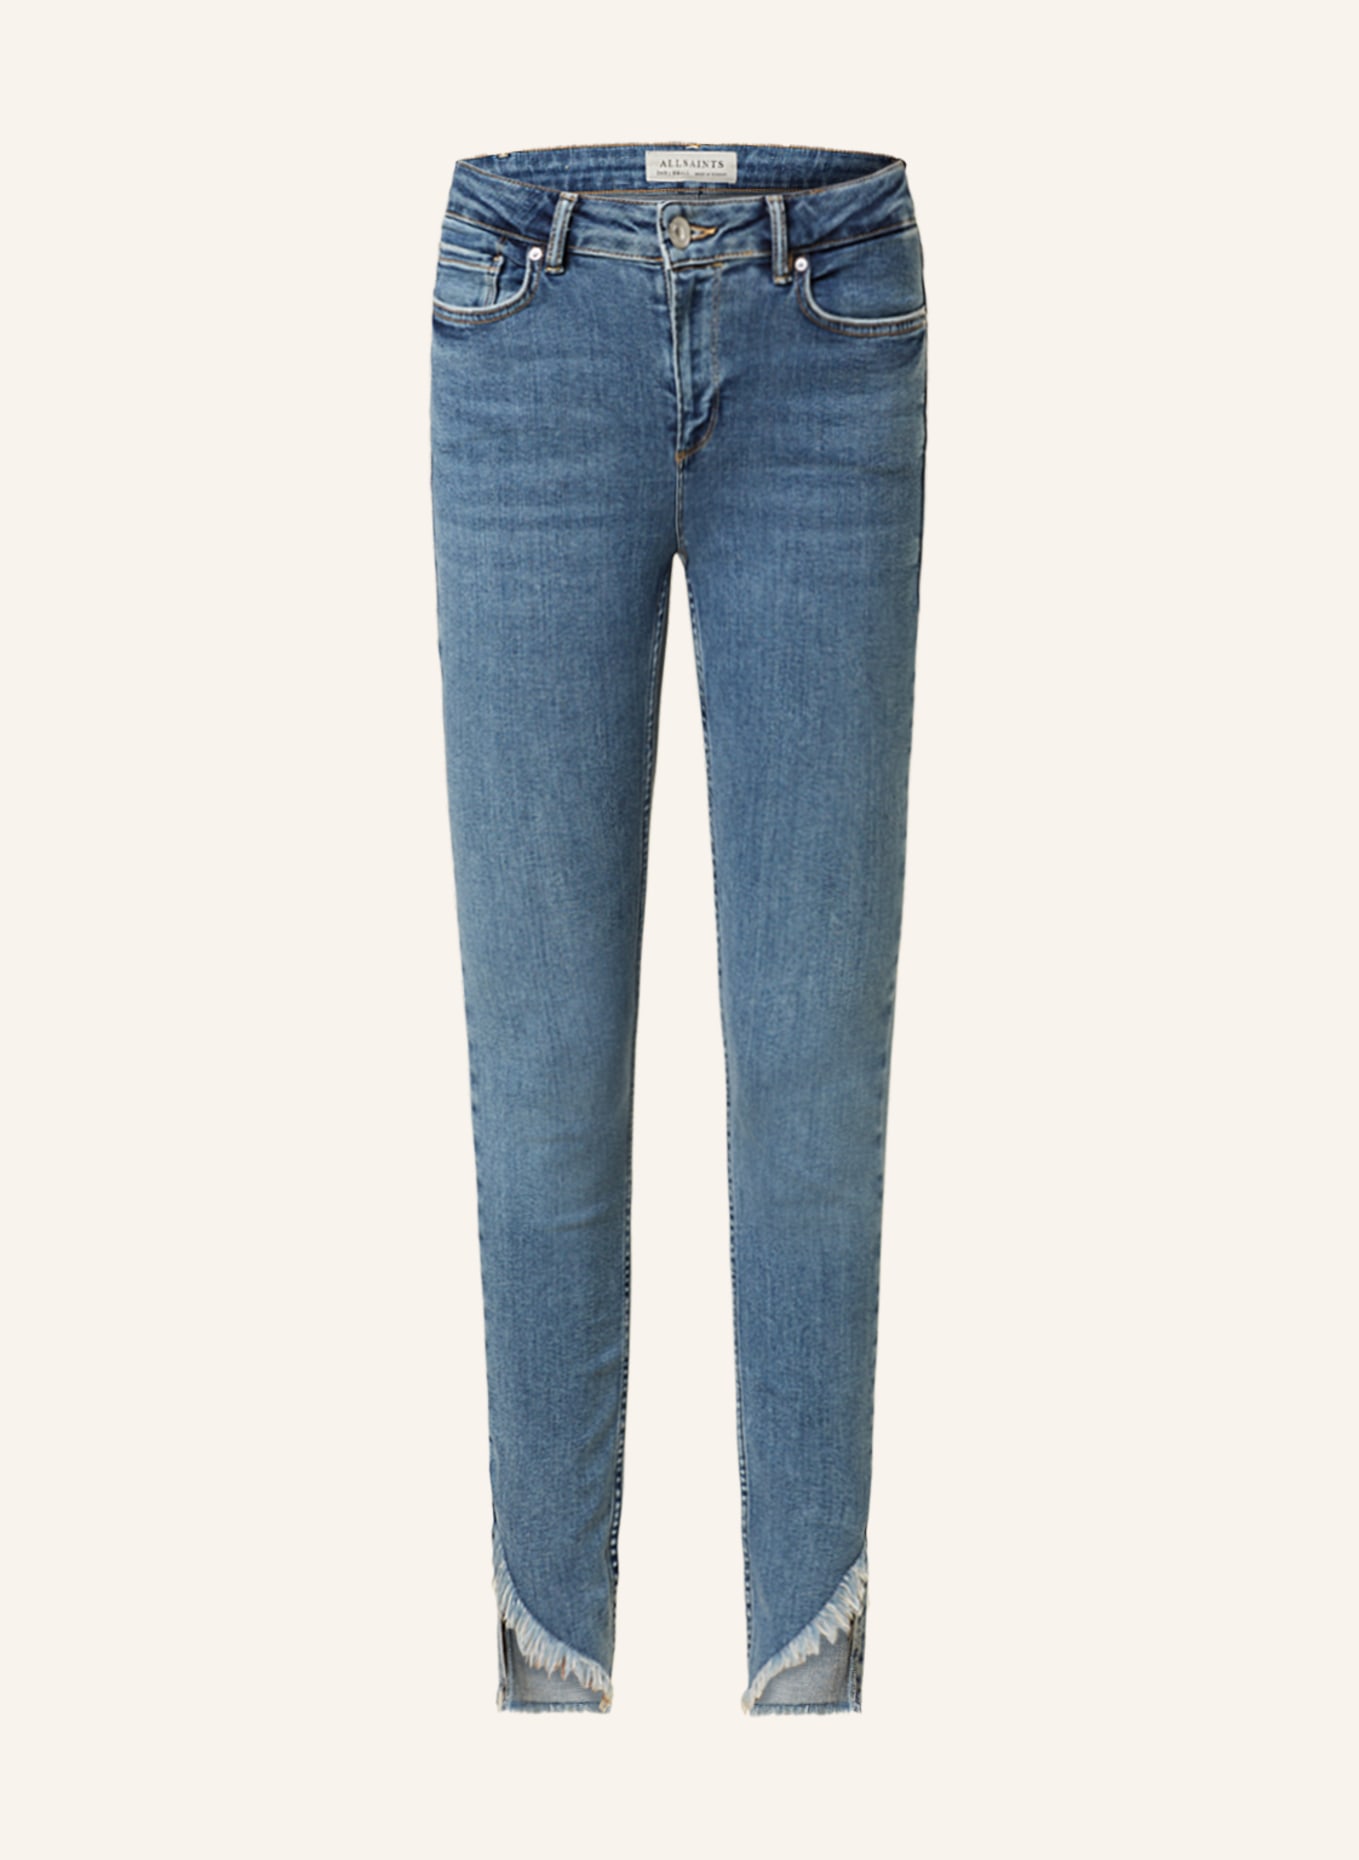 ALLSAINTS Skinny jeans DAX, Color: 6328 HUNTER BLUE (Image 1)